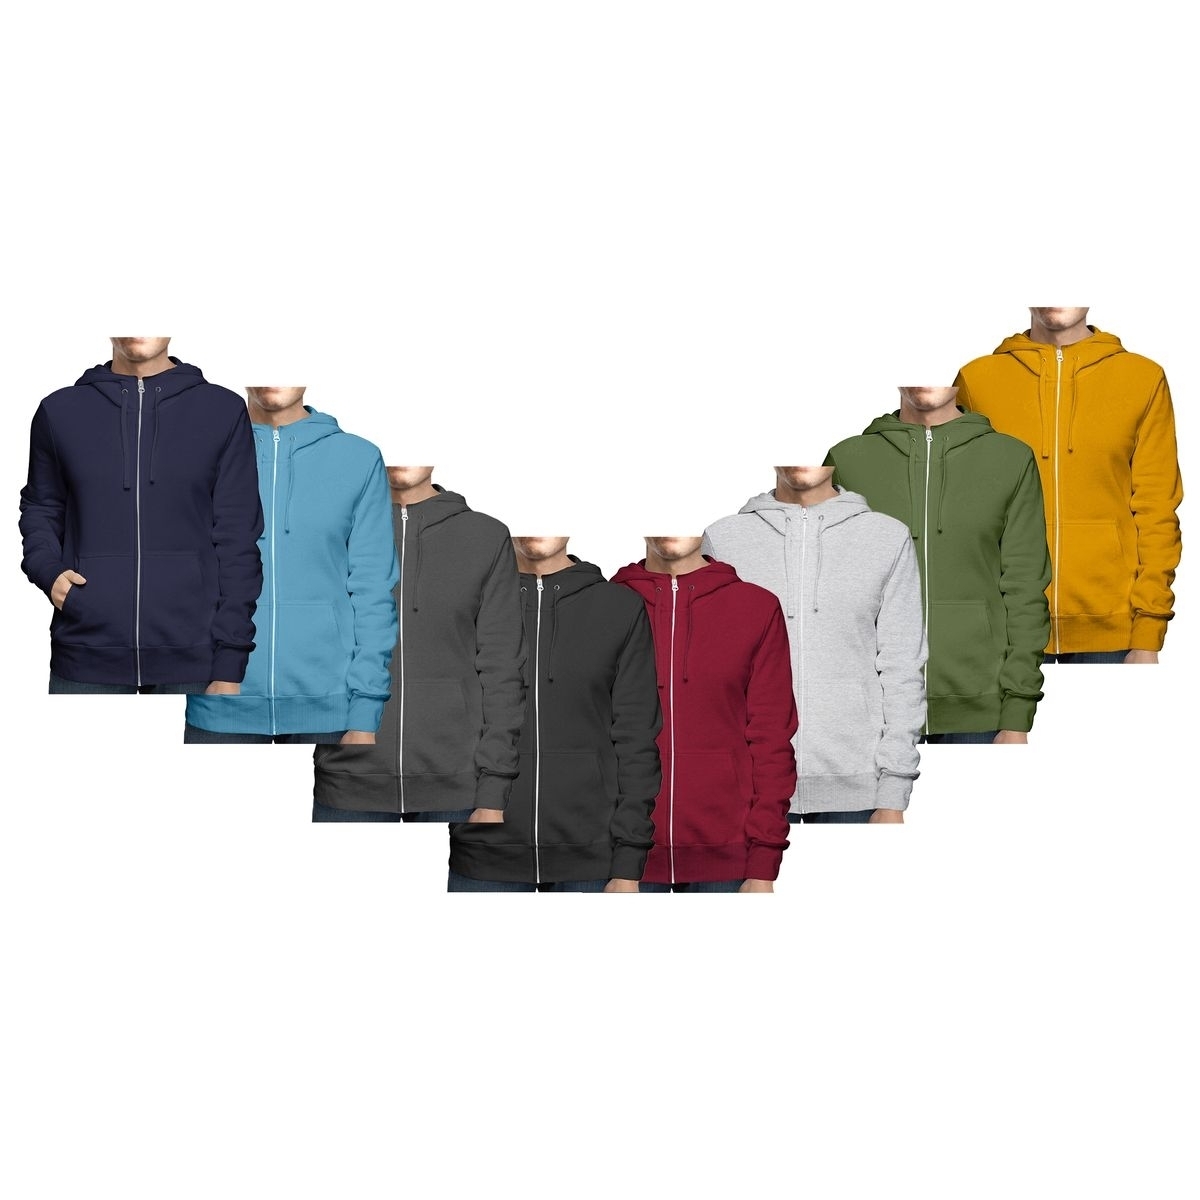 Men's Winter Warm Cozy Full Zip-Up Fleece Lined Soft Hoodie Sweatshirt - Grey, X-large